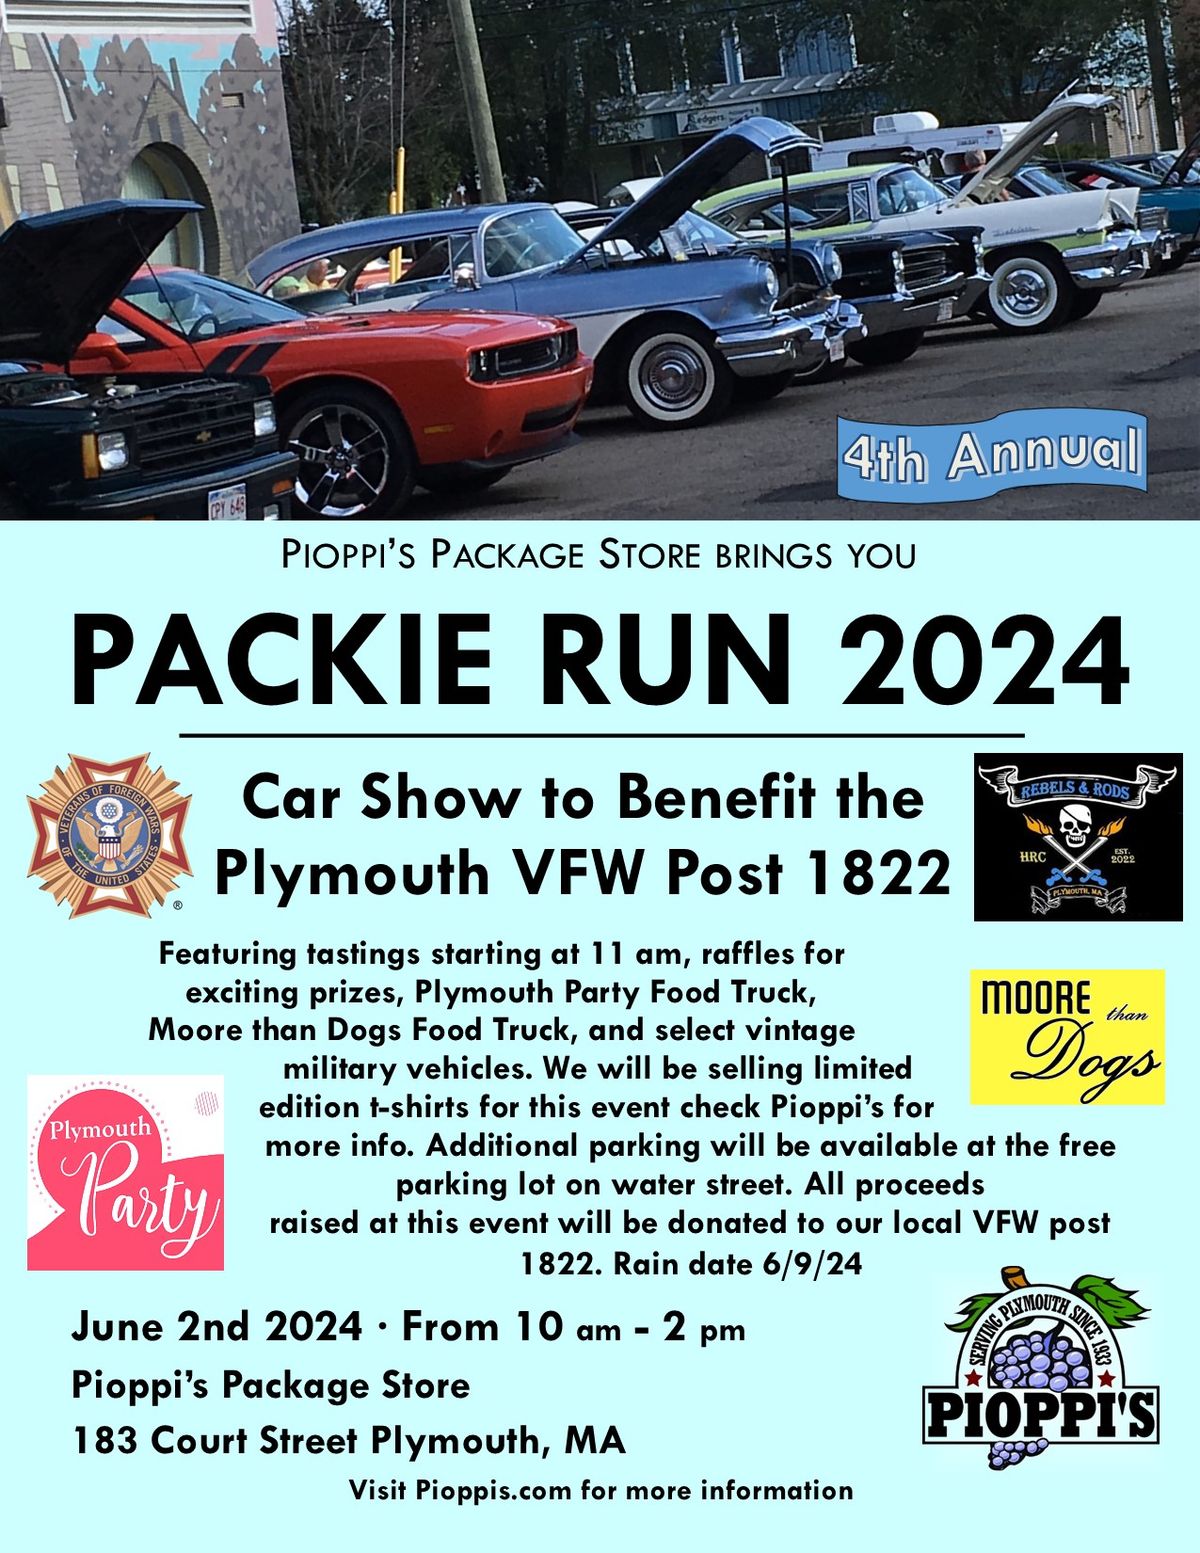 Packie Run Car Show Fundraiser